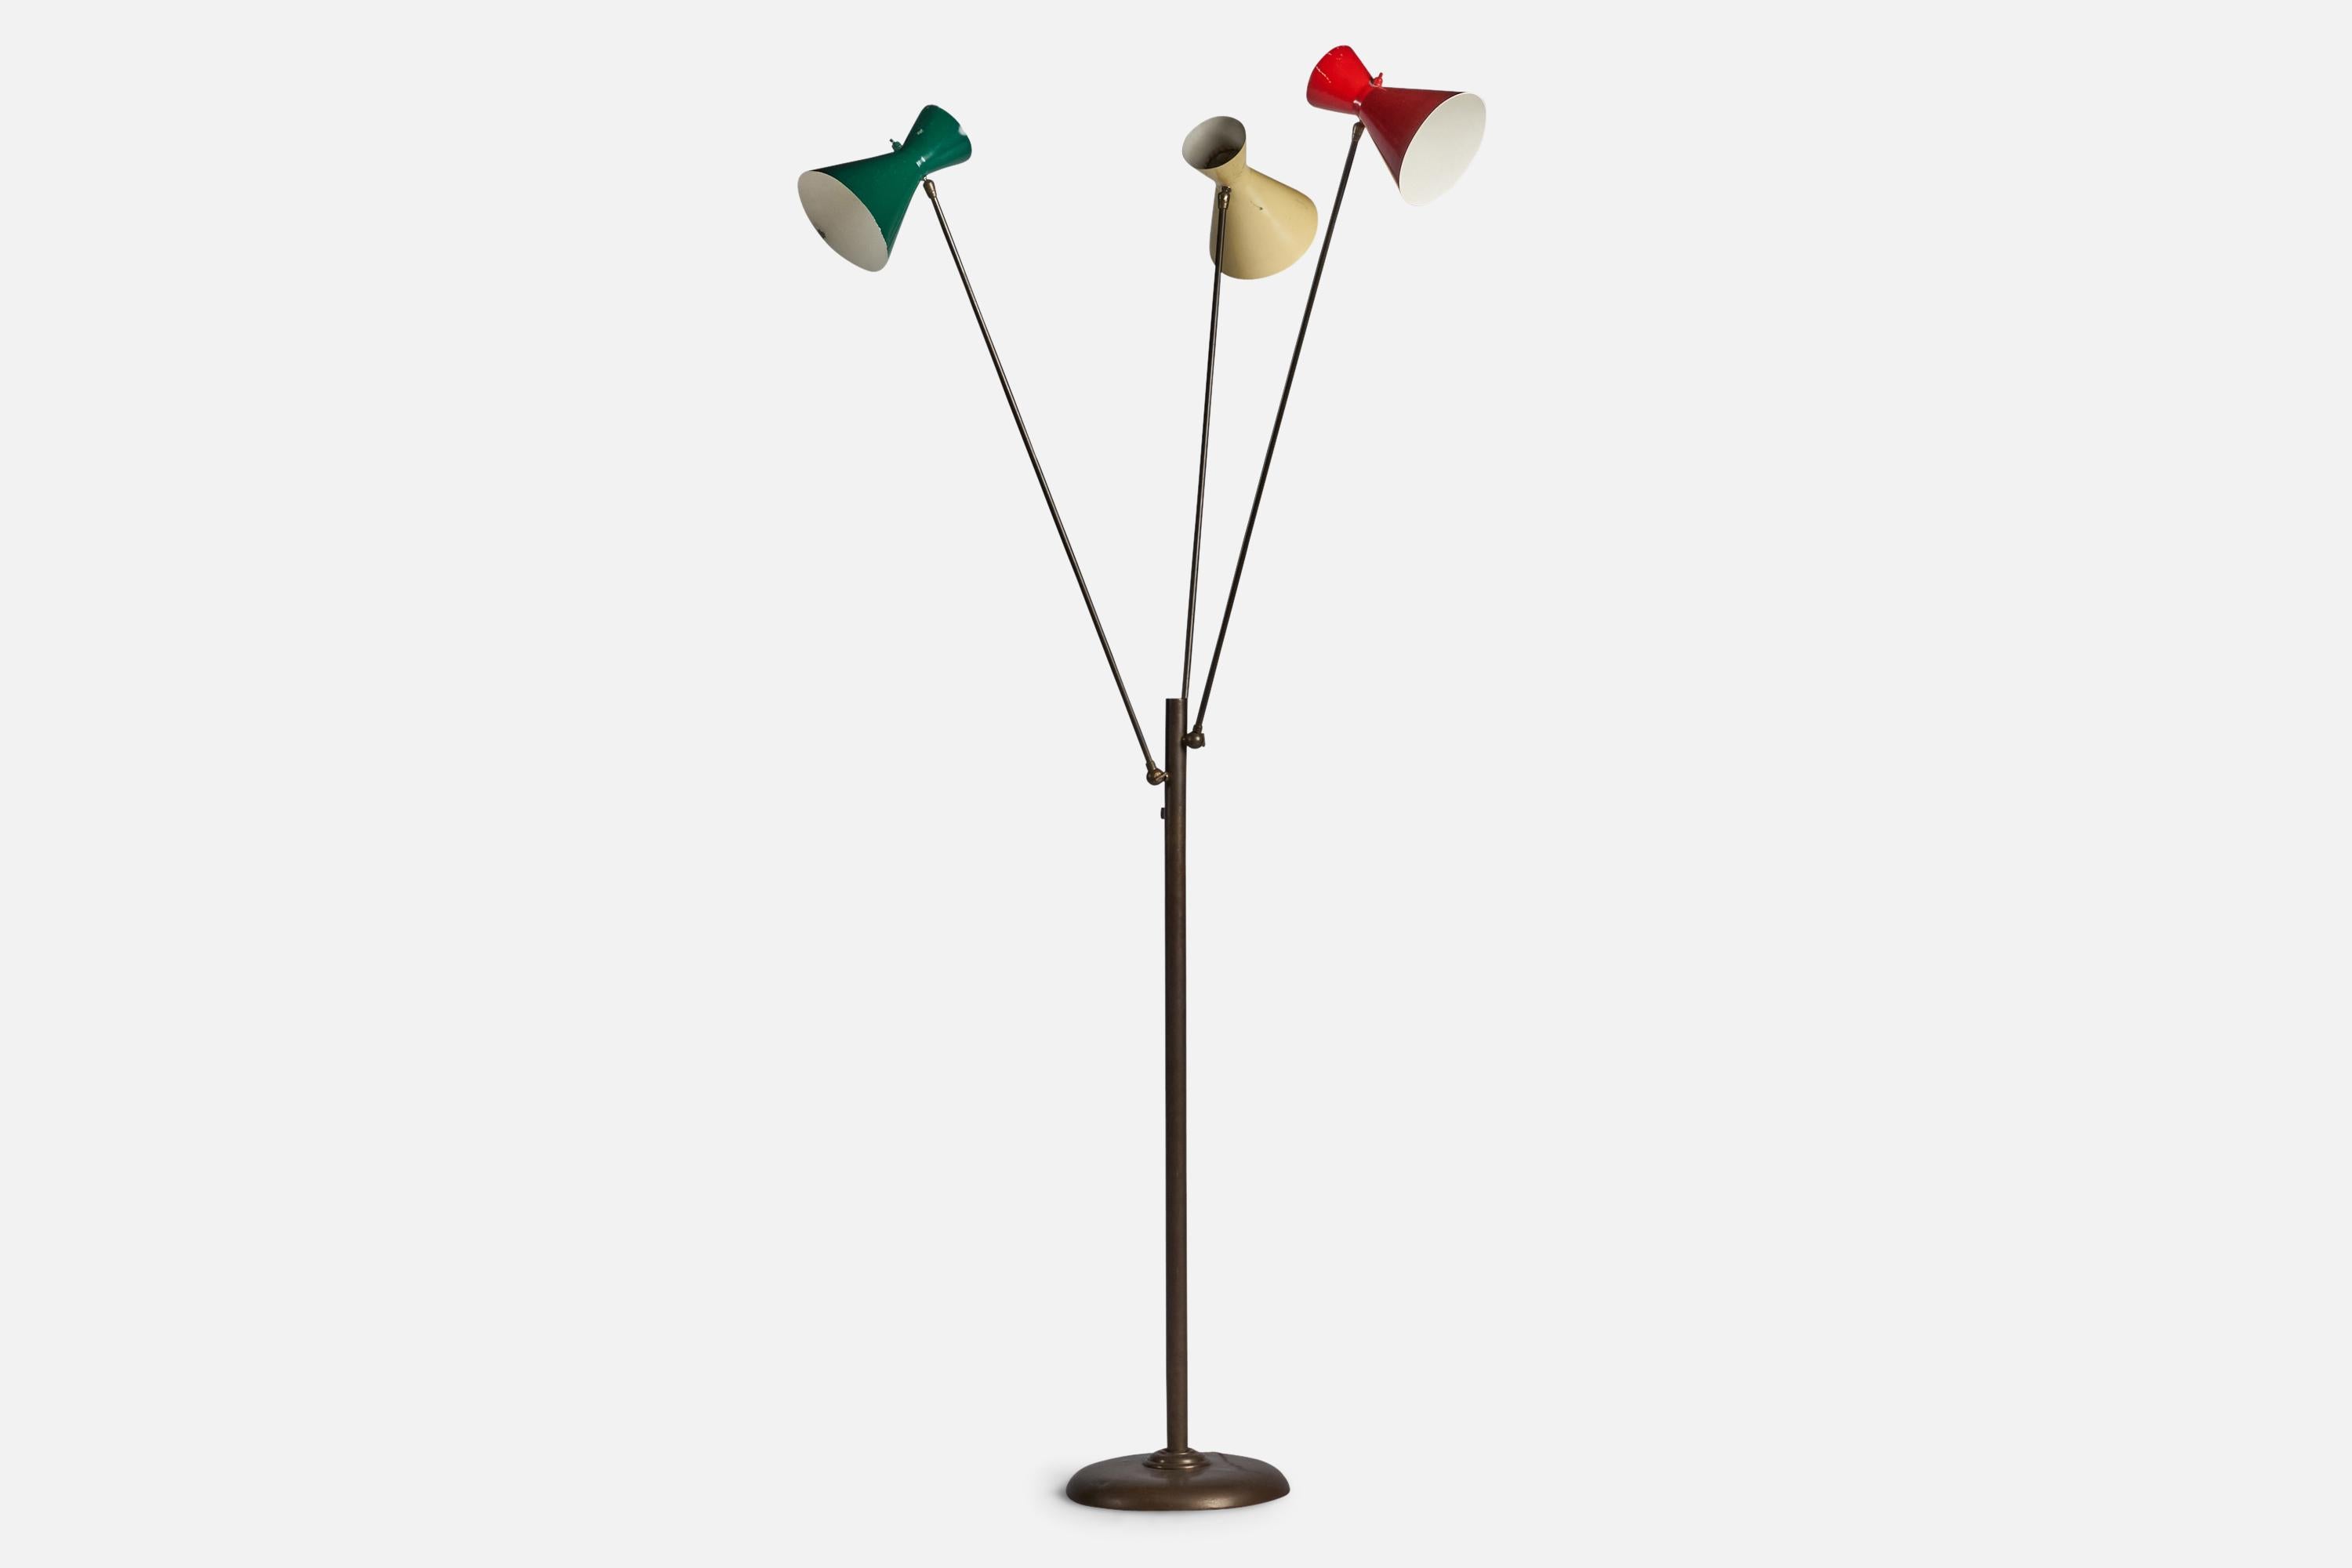 Verstellbare Stehlampe aus Messing und grünem, gelb und rot lackiertem Metall, entworfen und hergestellt in Italien, ca. 1980er Jahre.

Gesamtabmessungen (Zoll): 73,75